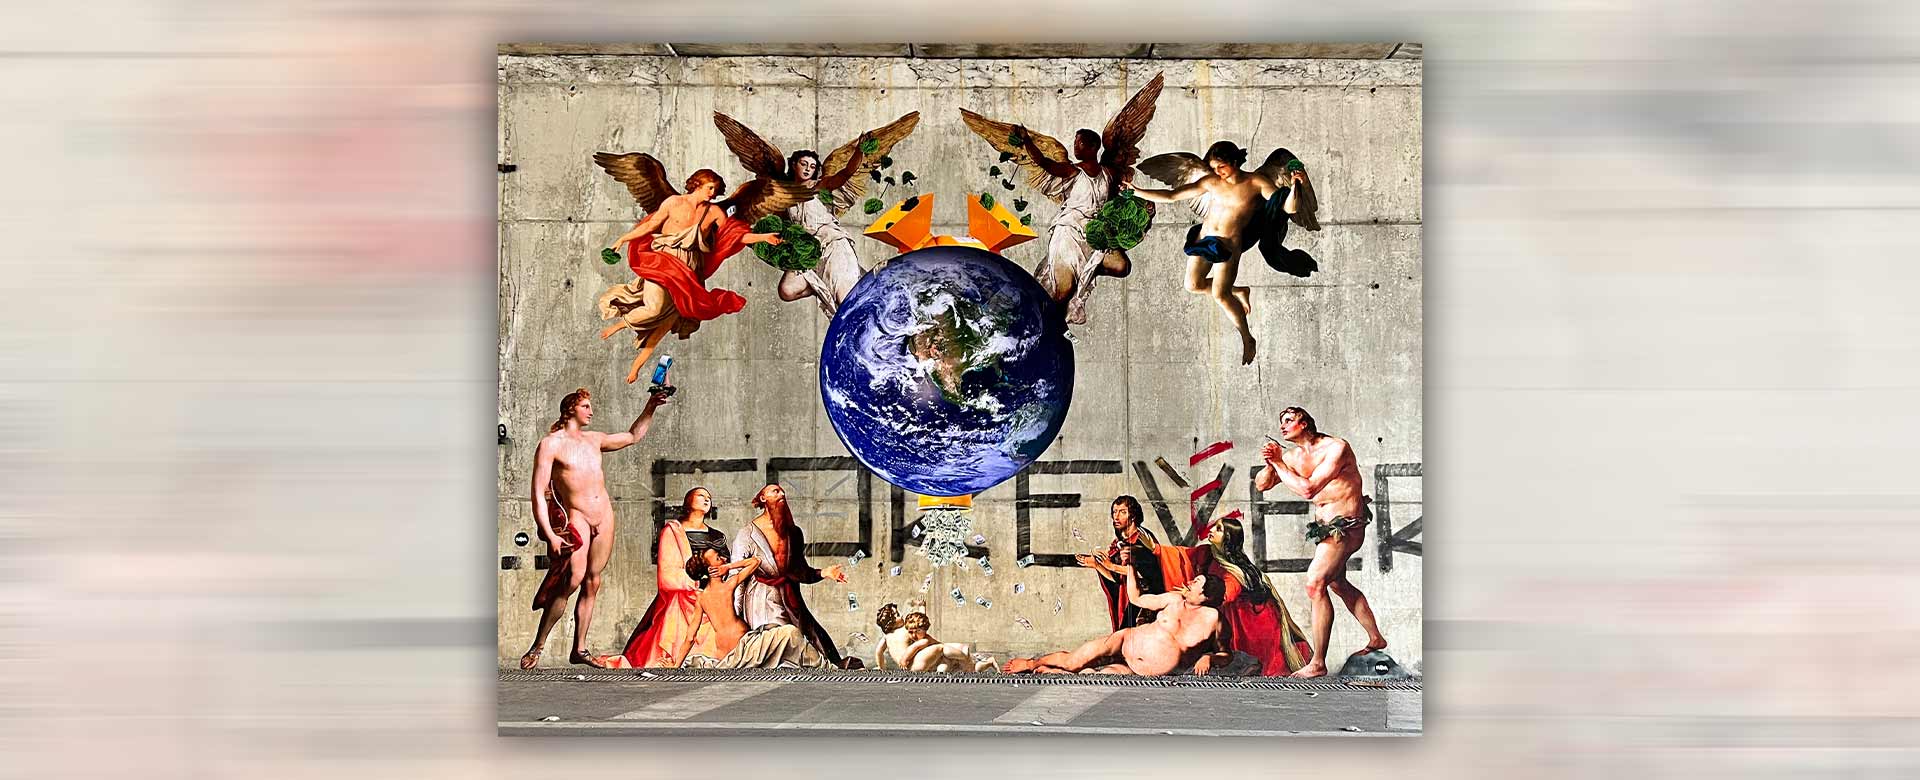 Il murales di Caiozzama realizzato per l’edizione 2022 del festival